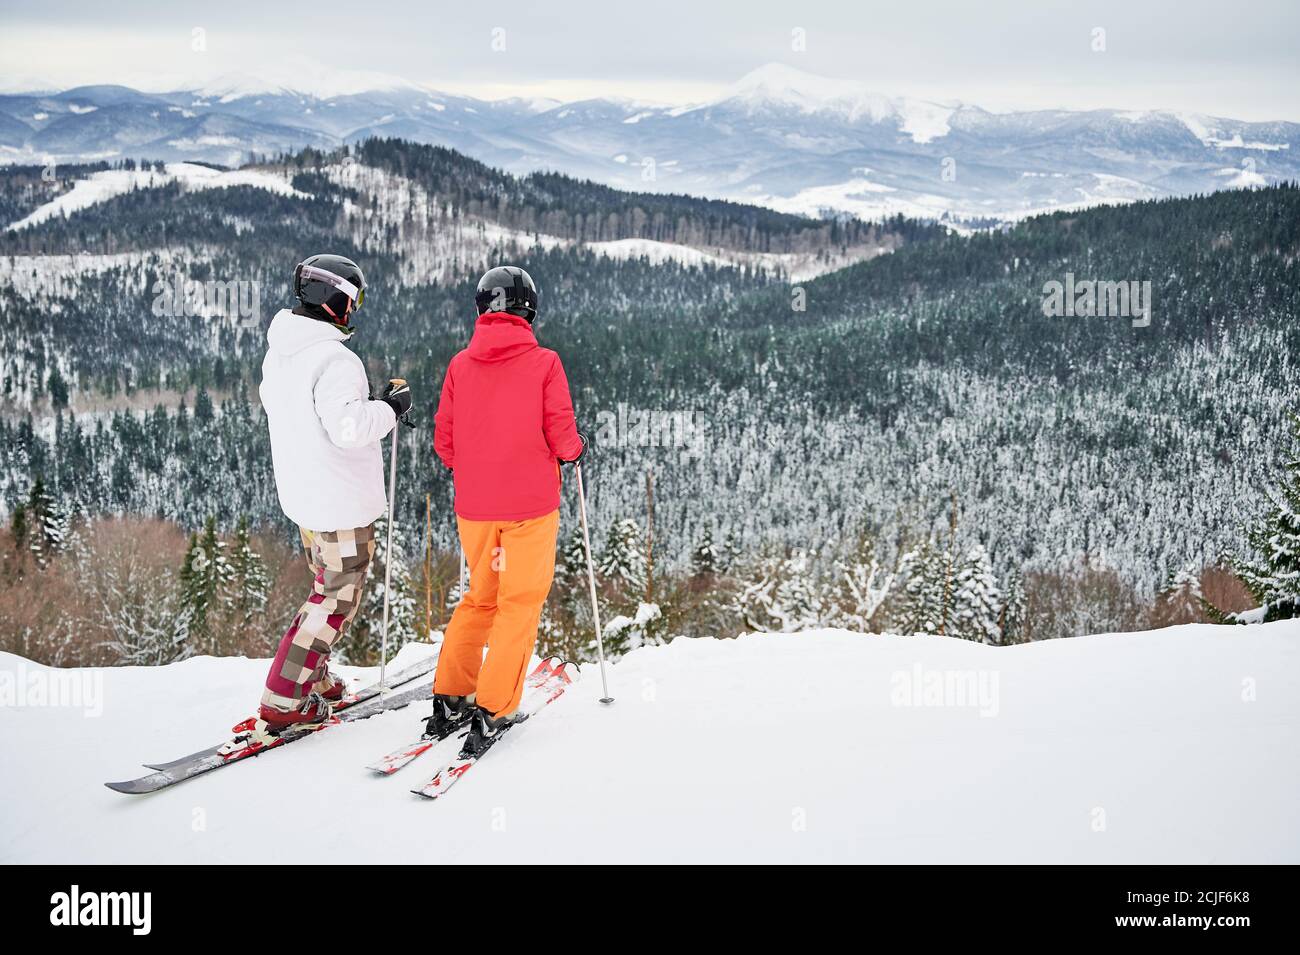 Zwei Freunde in Skianzügen und Skiausrüstung sind in den Winterbergen und genießen schneebedecktes Wetter, Skifahren und unglaubliche Landschaften. Rückansicht, Kopierbereich. Wintersportkonzept Stockfoto